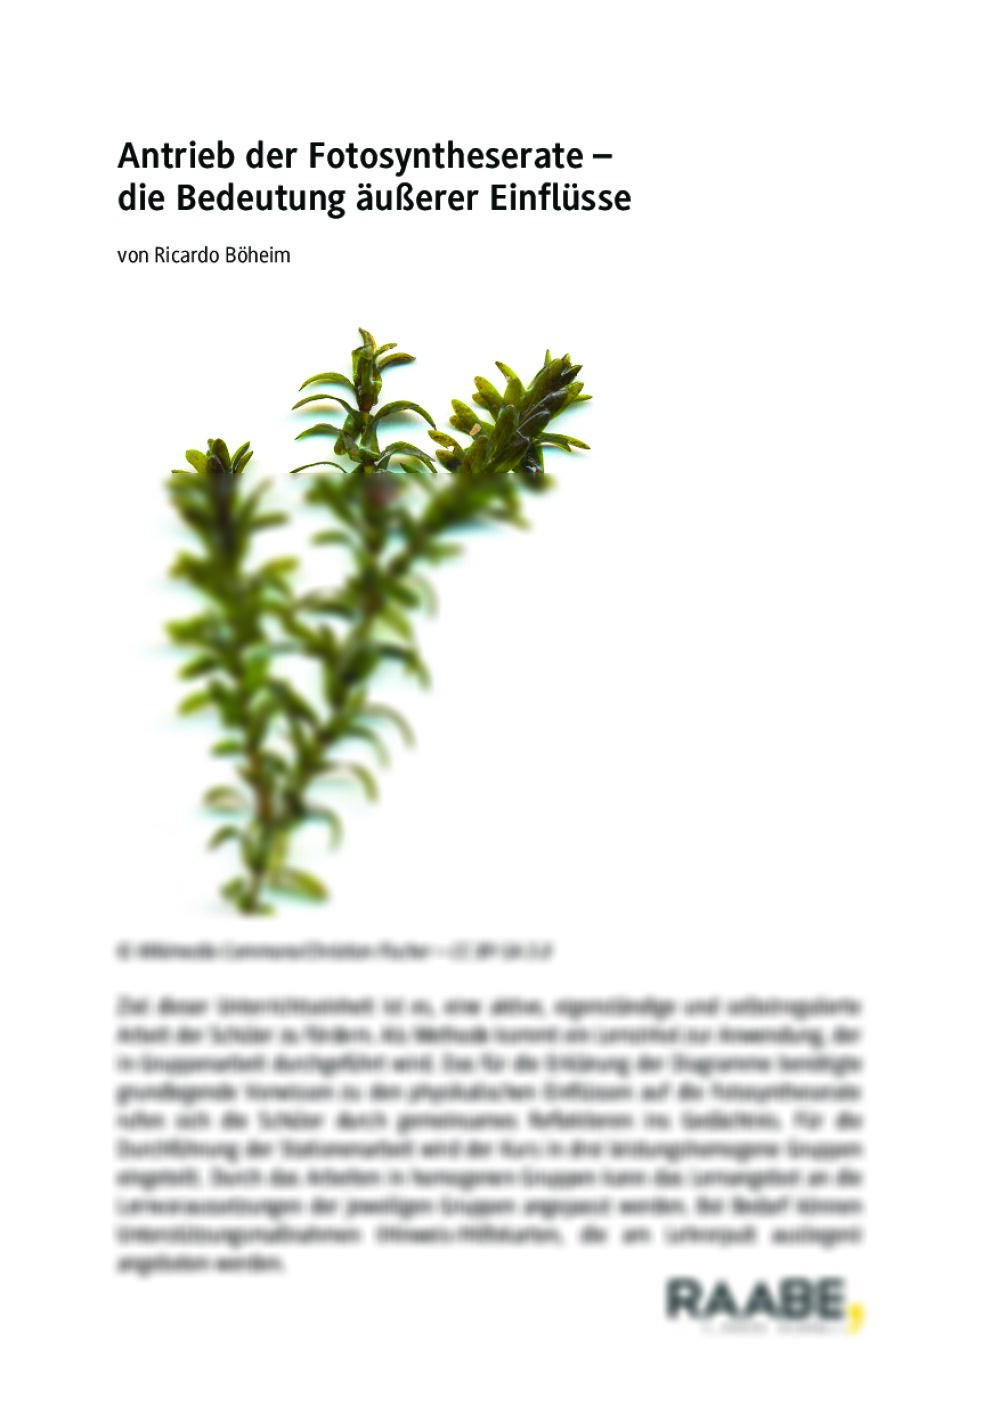 Antrieb der Fotosyntheserate - Seite 1